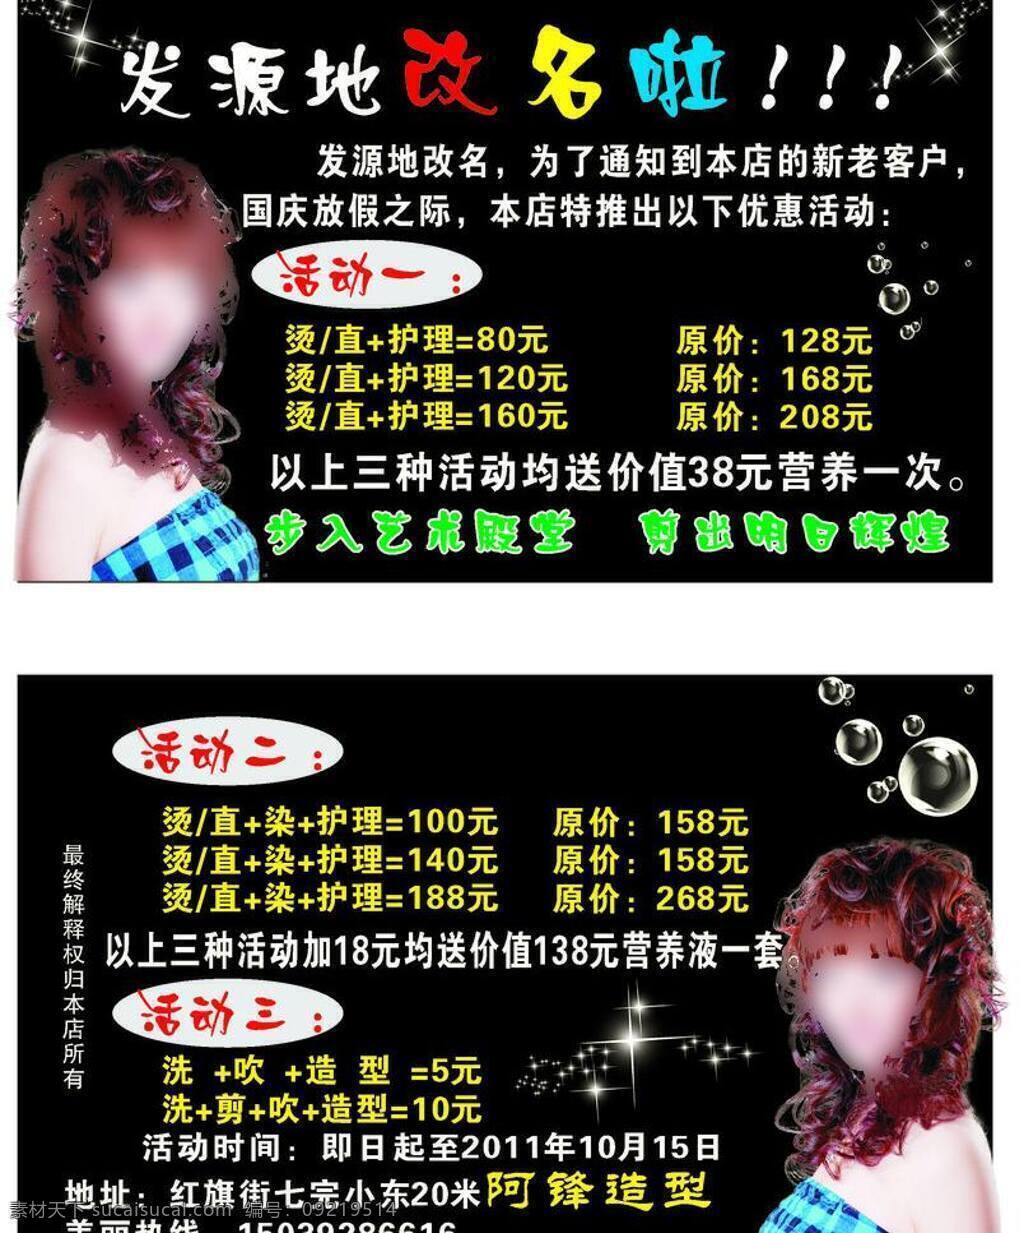 发源地 理发店 宣传 彩页 dm宣传单 美女发型 透明泡泡 星星 矢量 海报 宣传海报 宣传单 dm